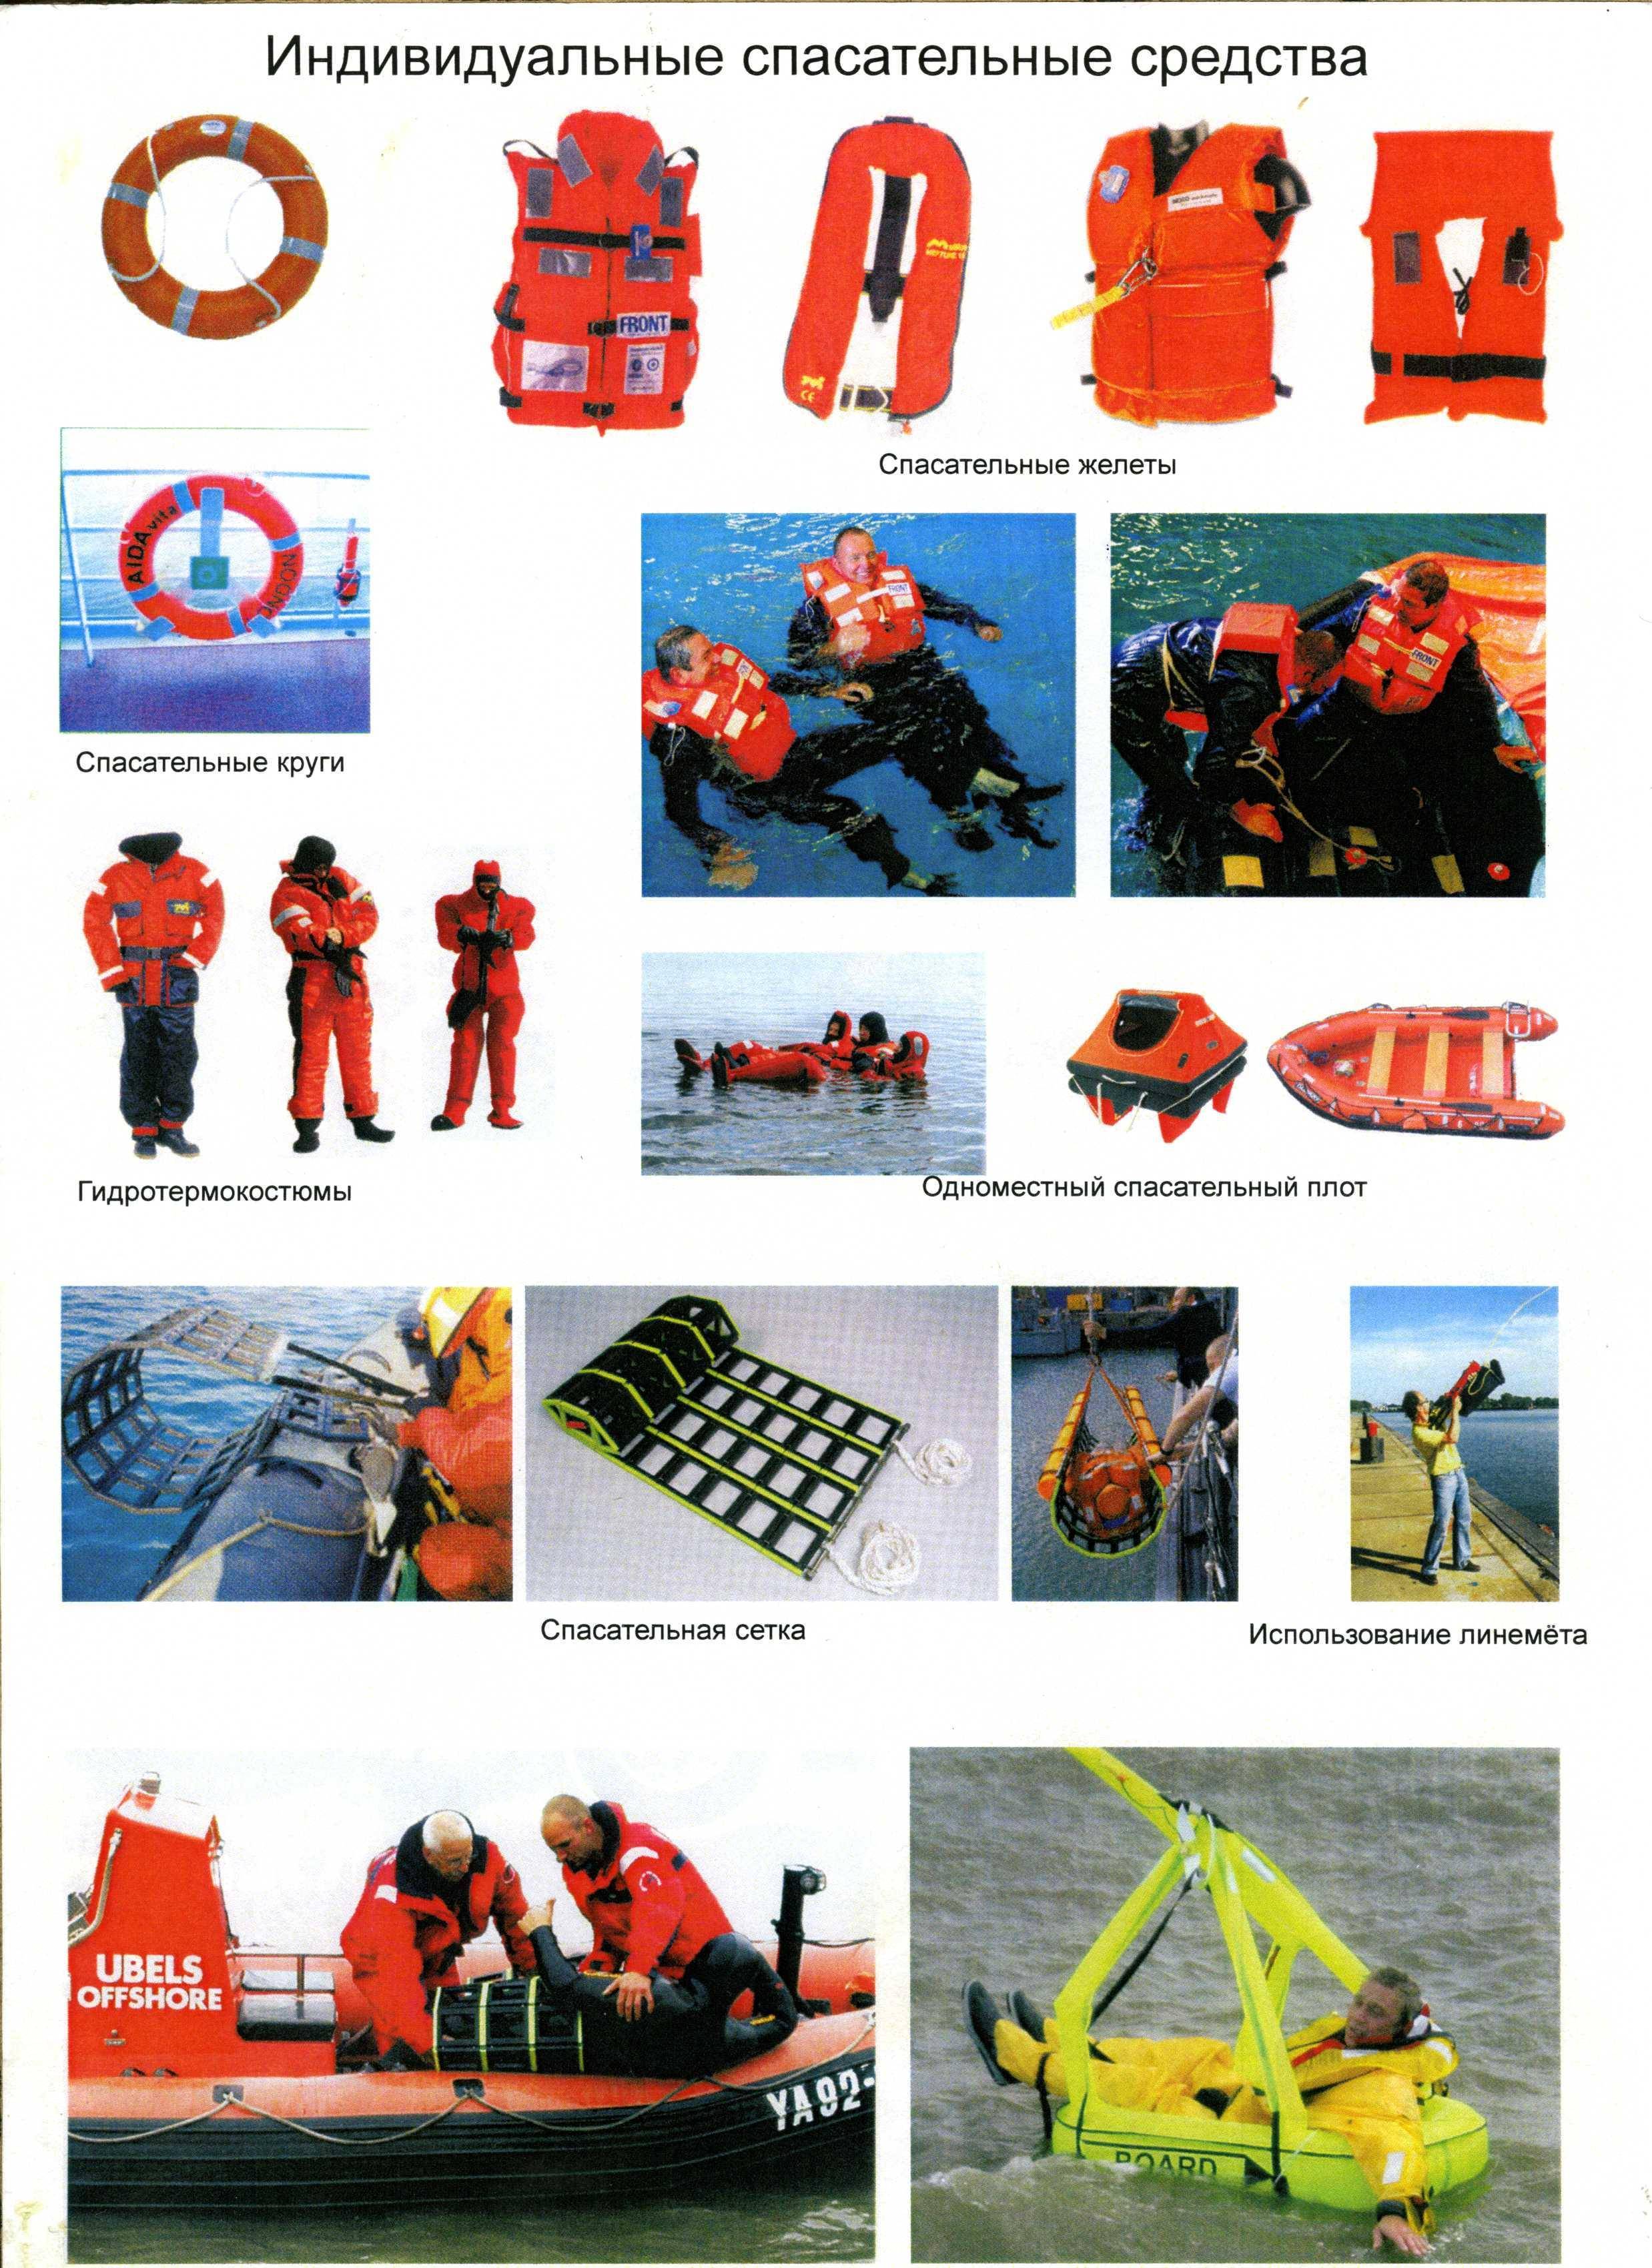 Виды и классификация аварийно-спасательного оборудования судна